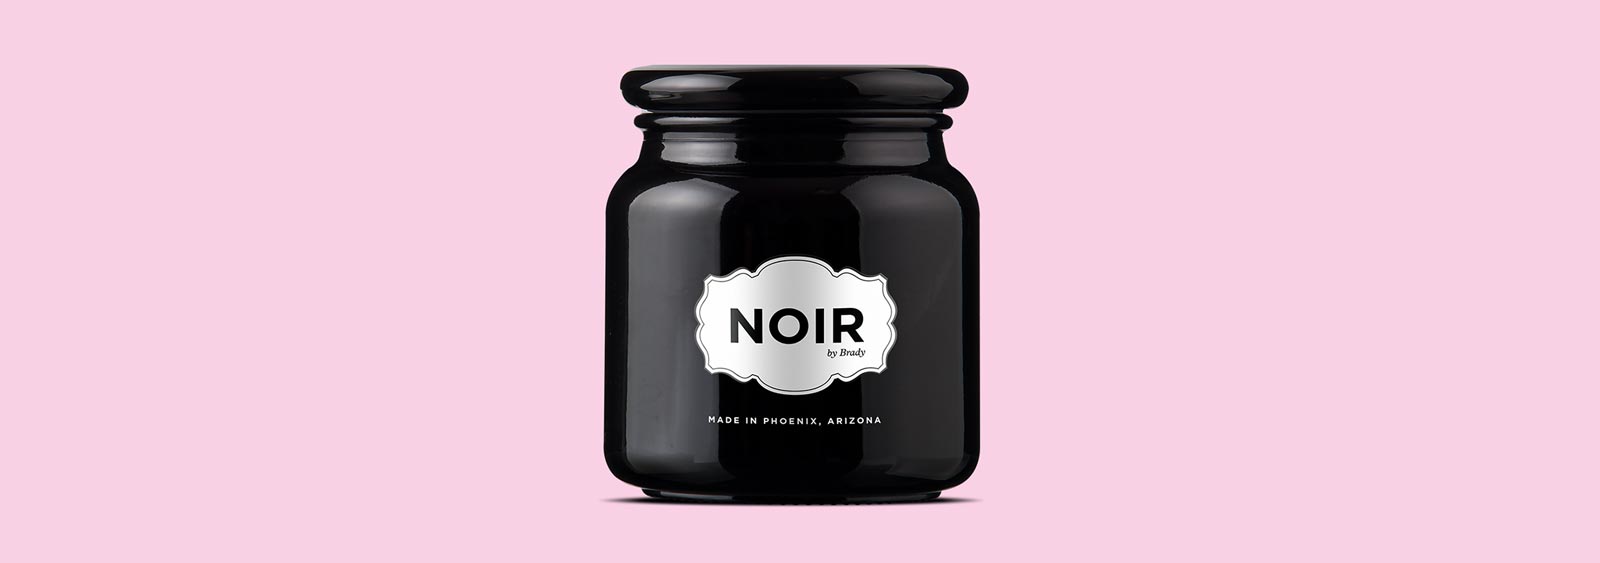 Noir by Brady brand design by Noisy Ghost Co.